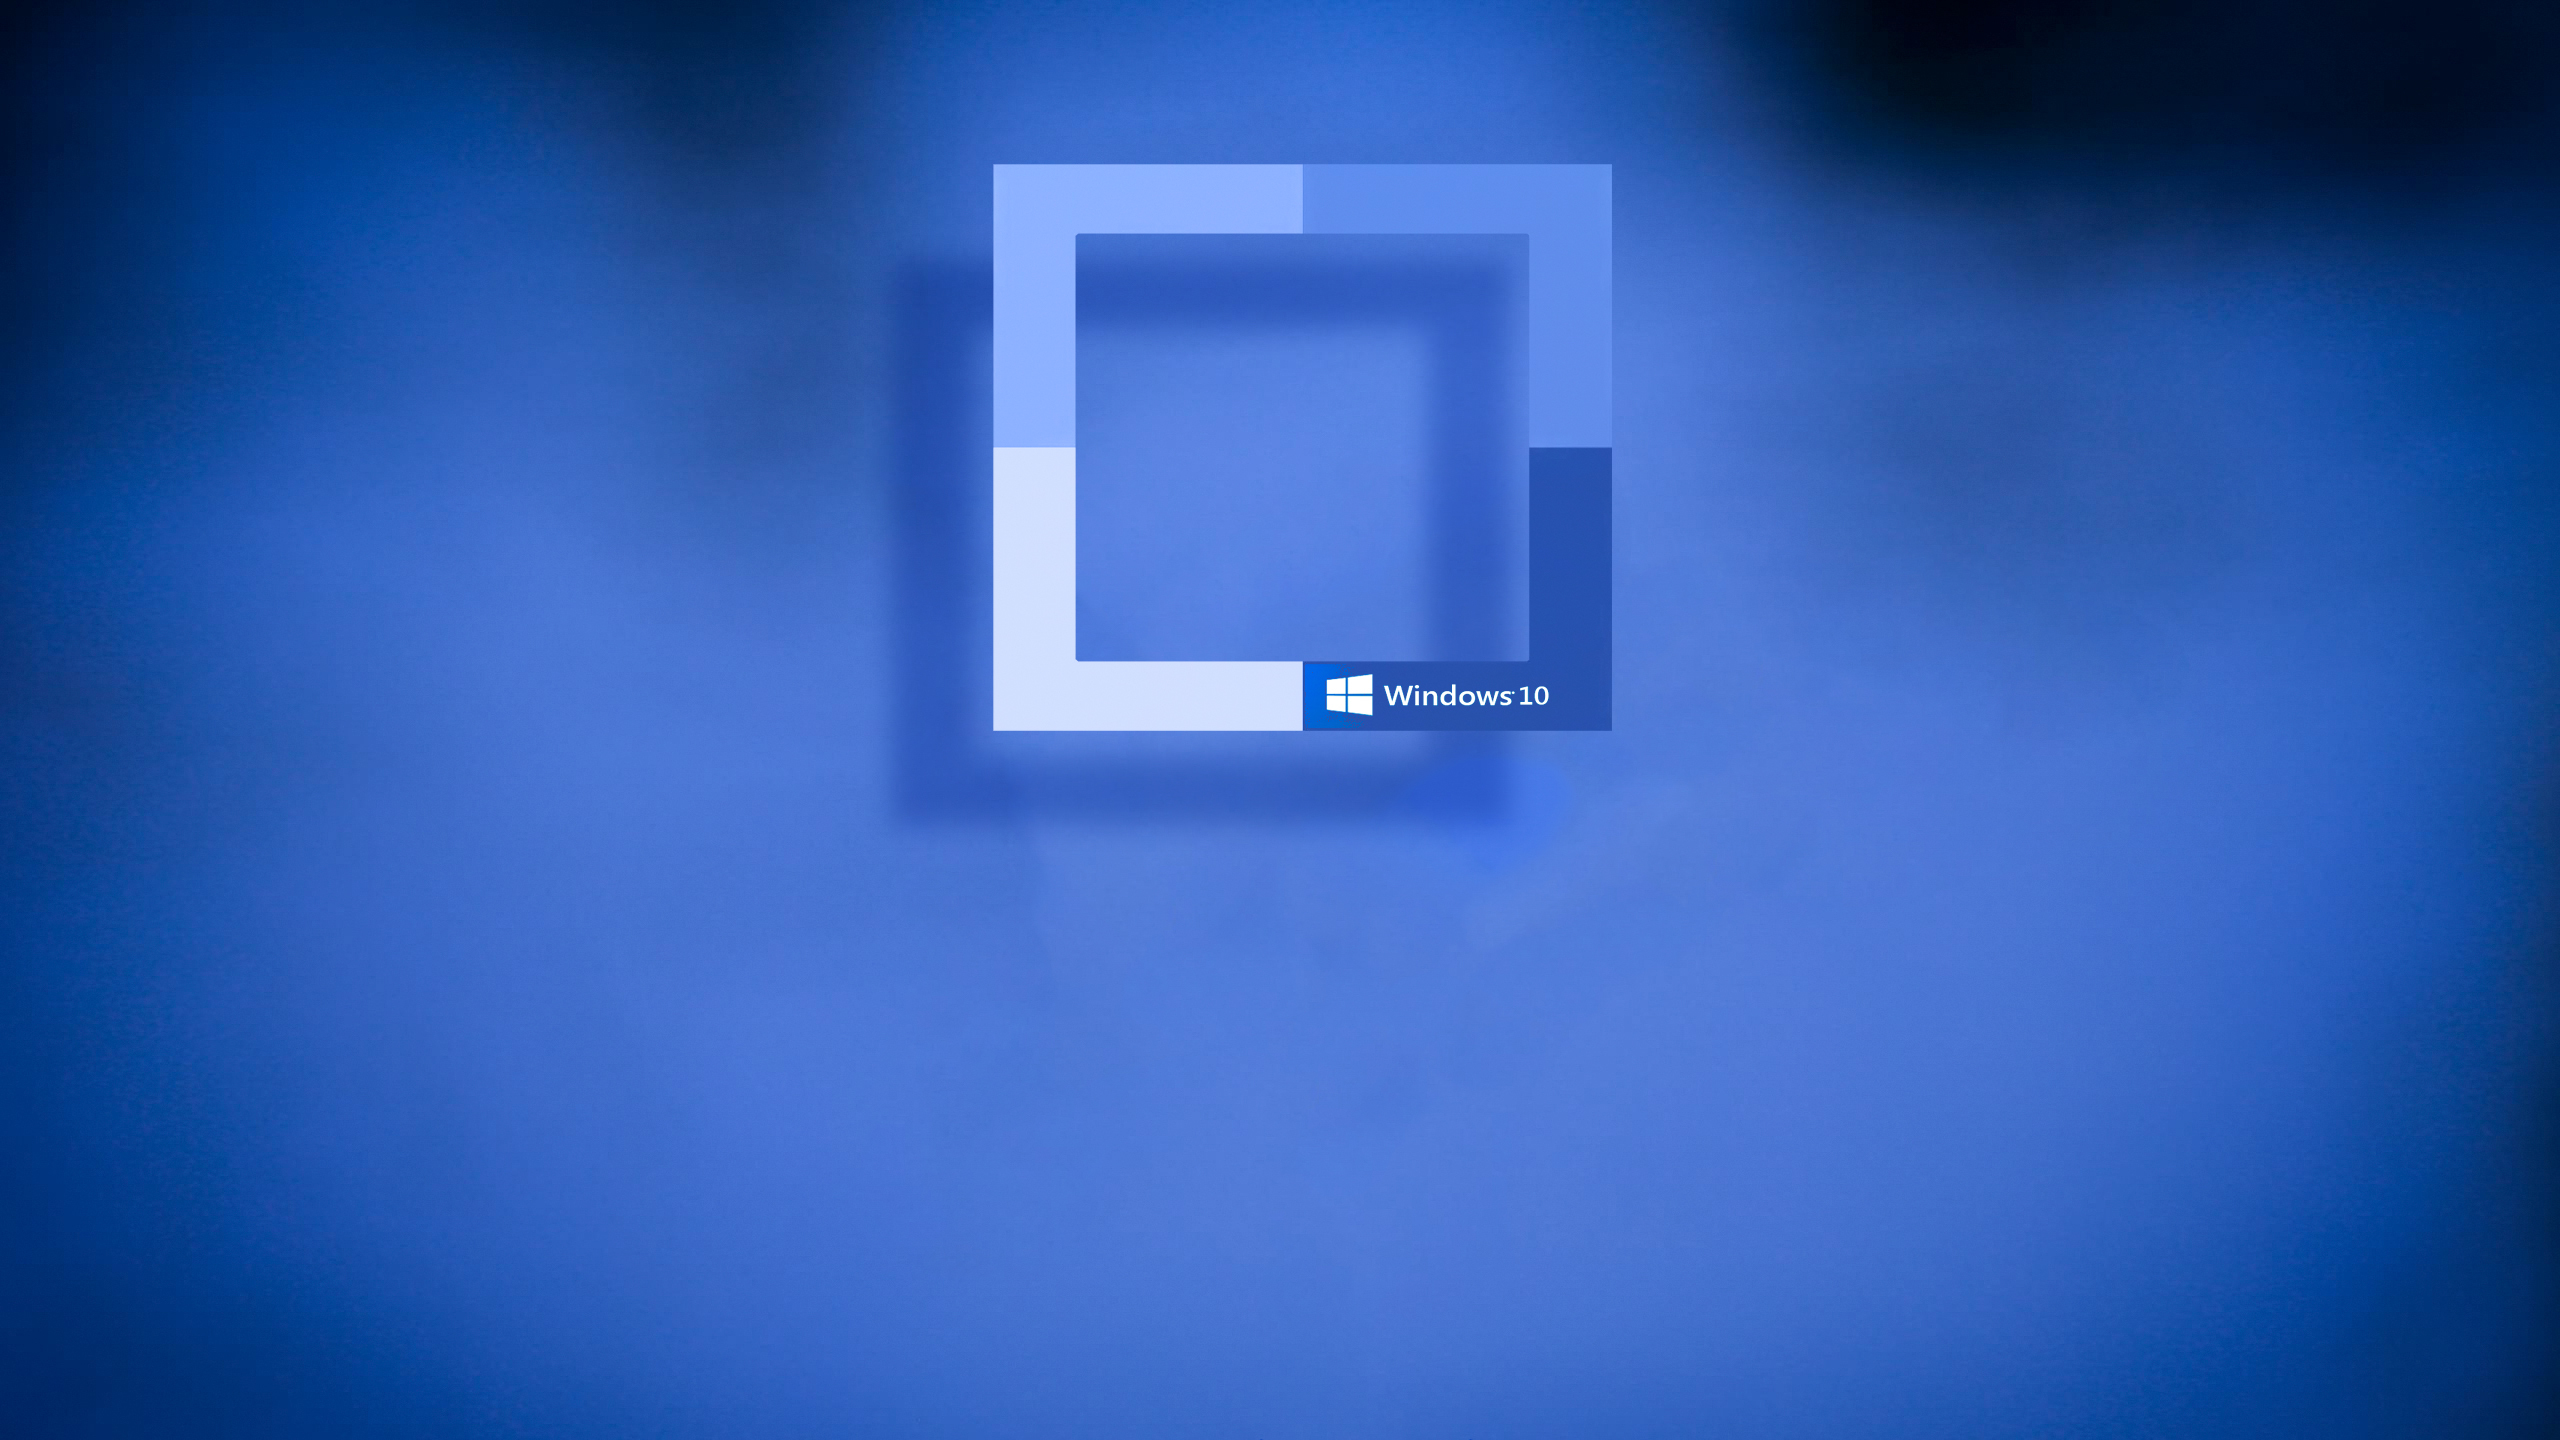 hd desktop hintergründe für windows 10,blau,text,elektrisches blau,kobaltblau,schriftart